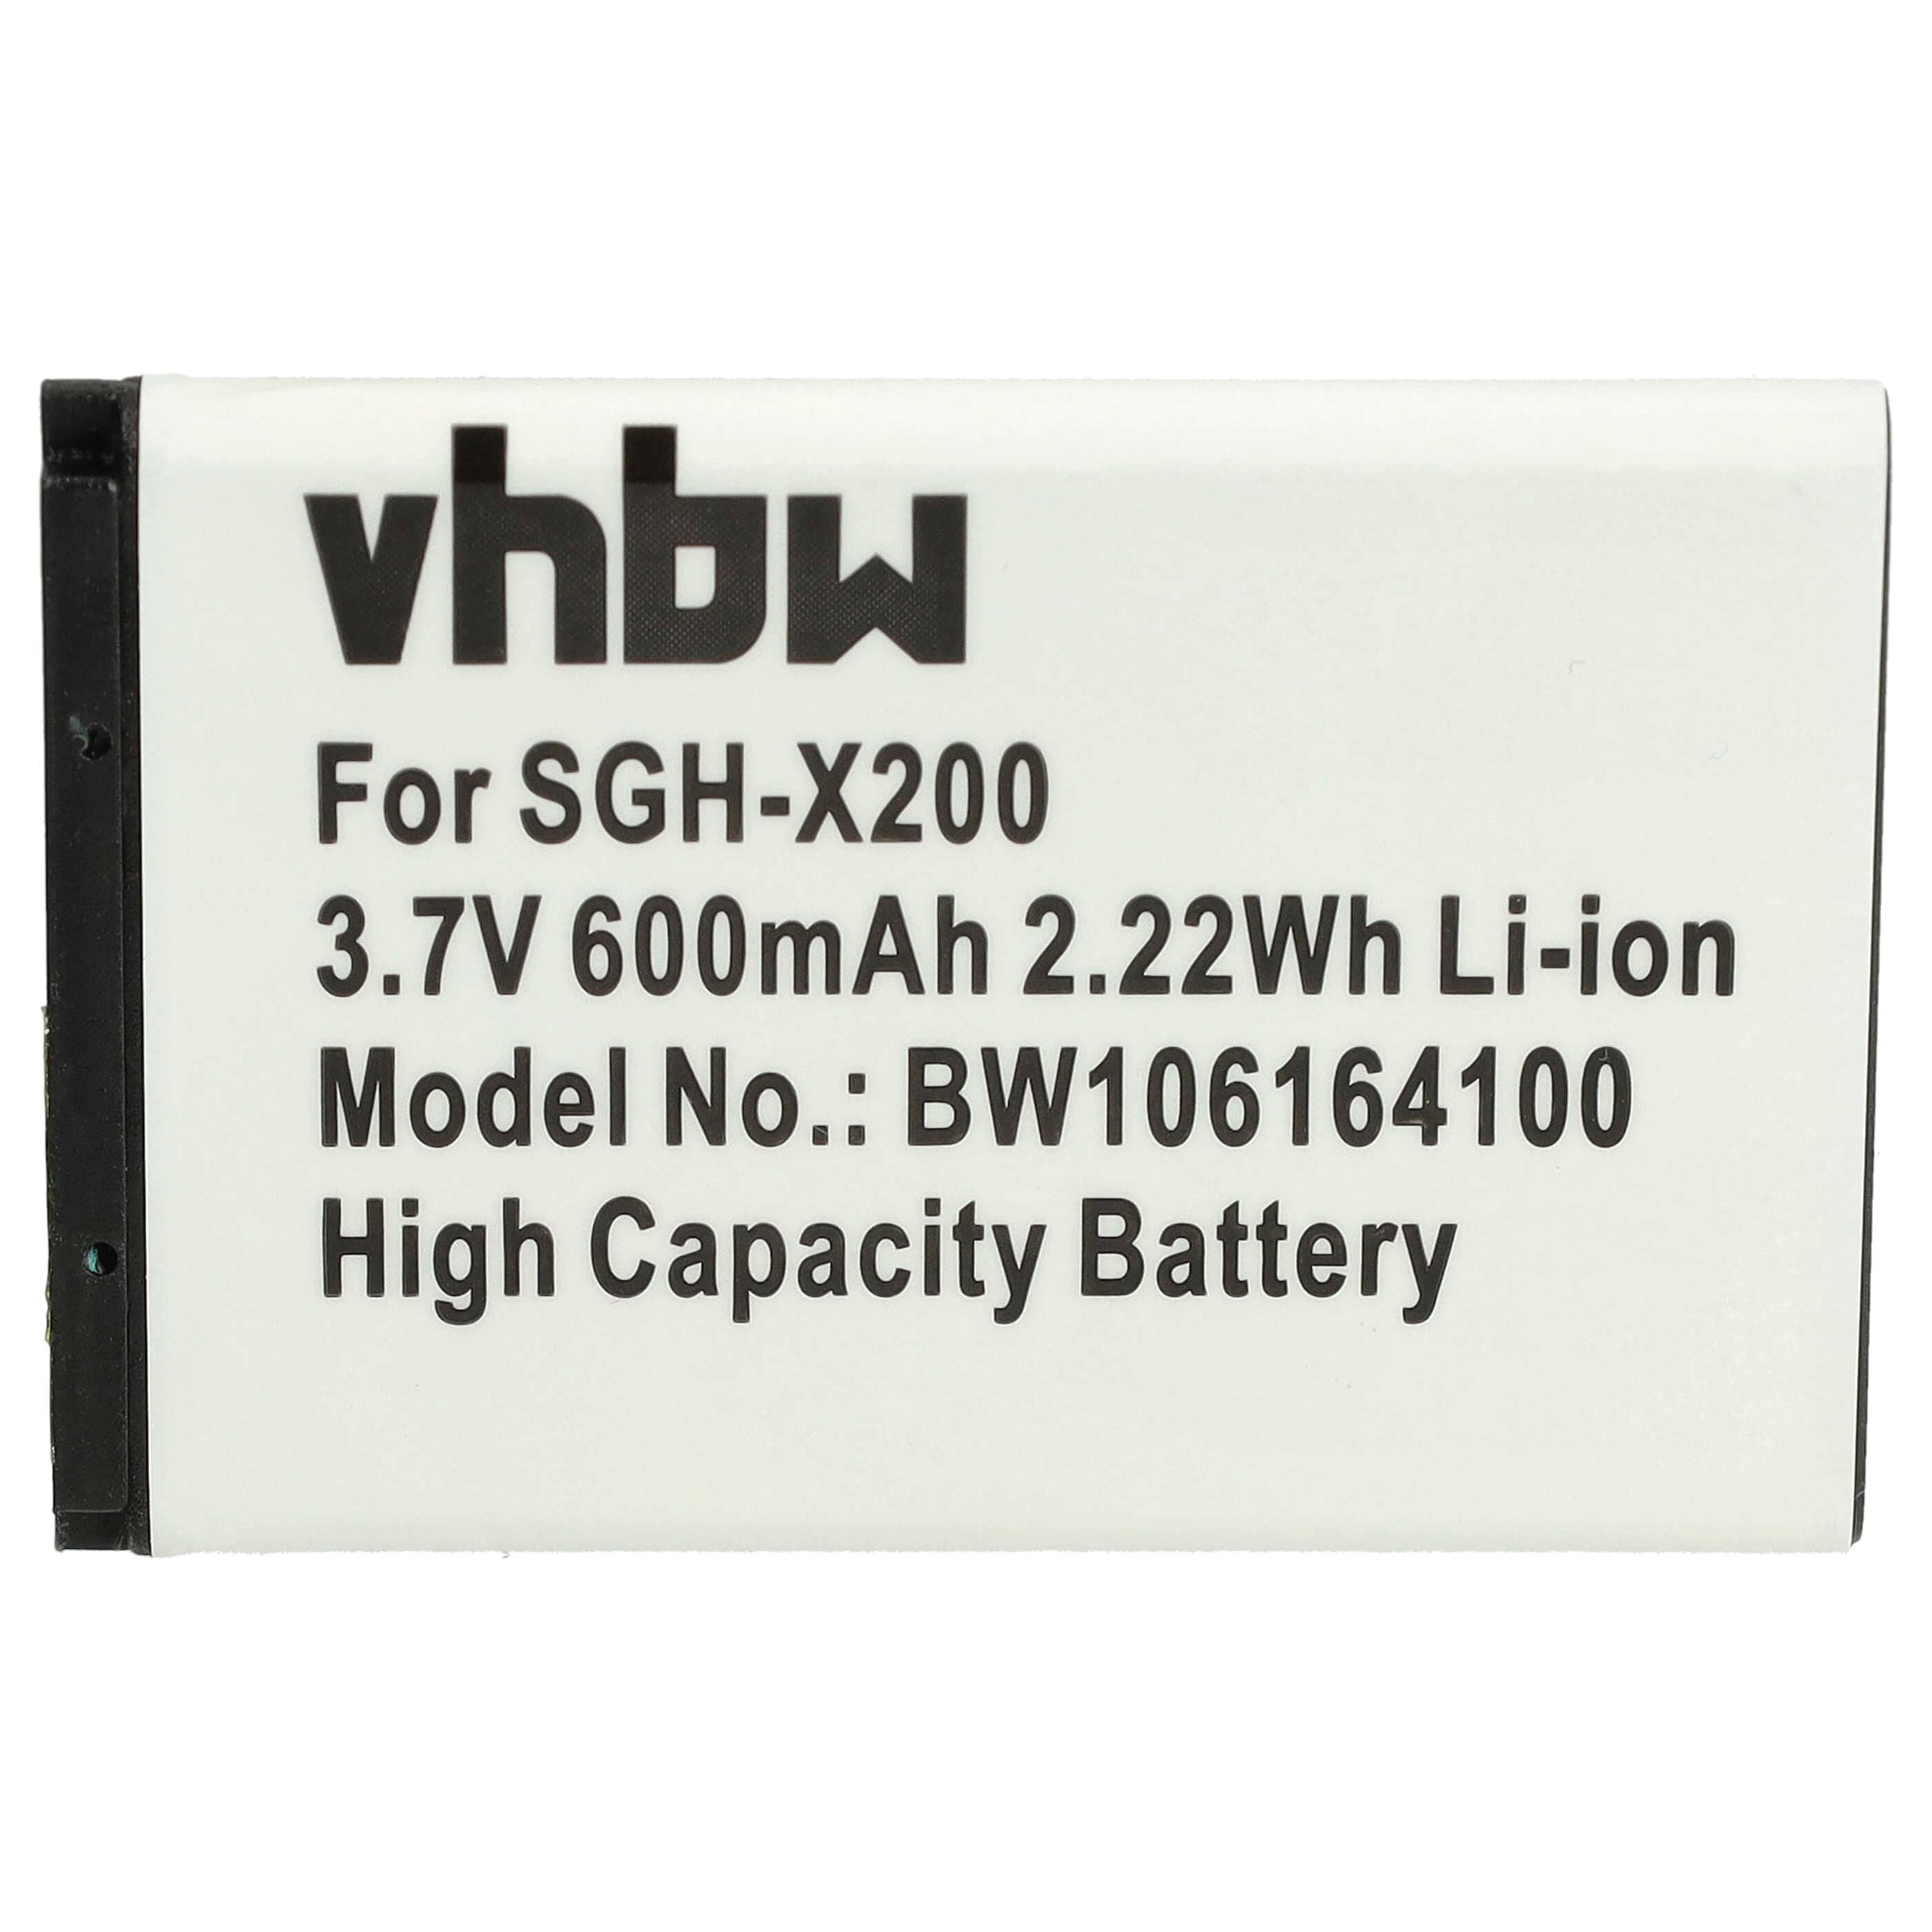 Akumulator Bateria do smartfona komórki zam. Samsung AB043446LA, AB043446BC, AB043446BE - 600mAh, 3,7V, Li-Ion